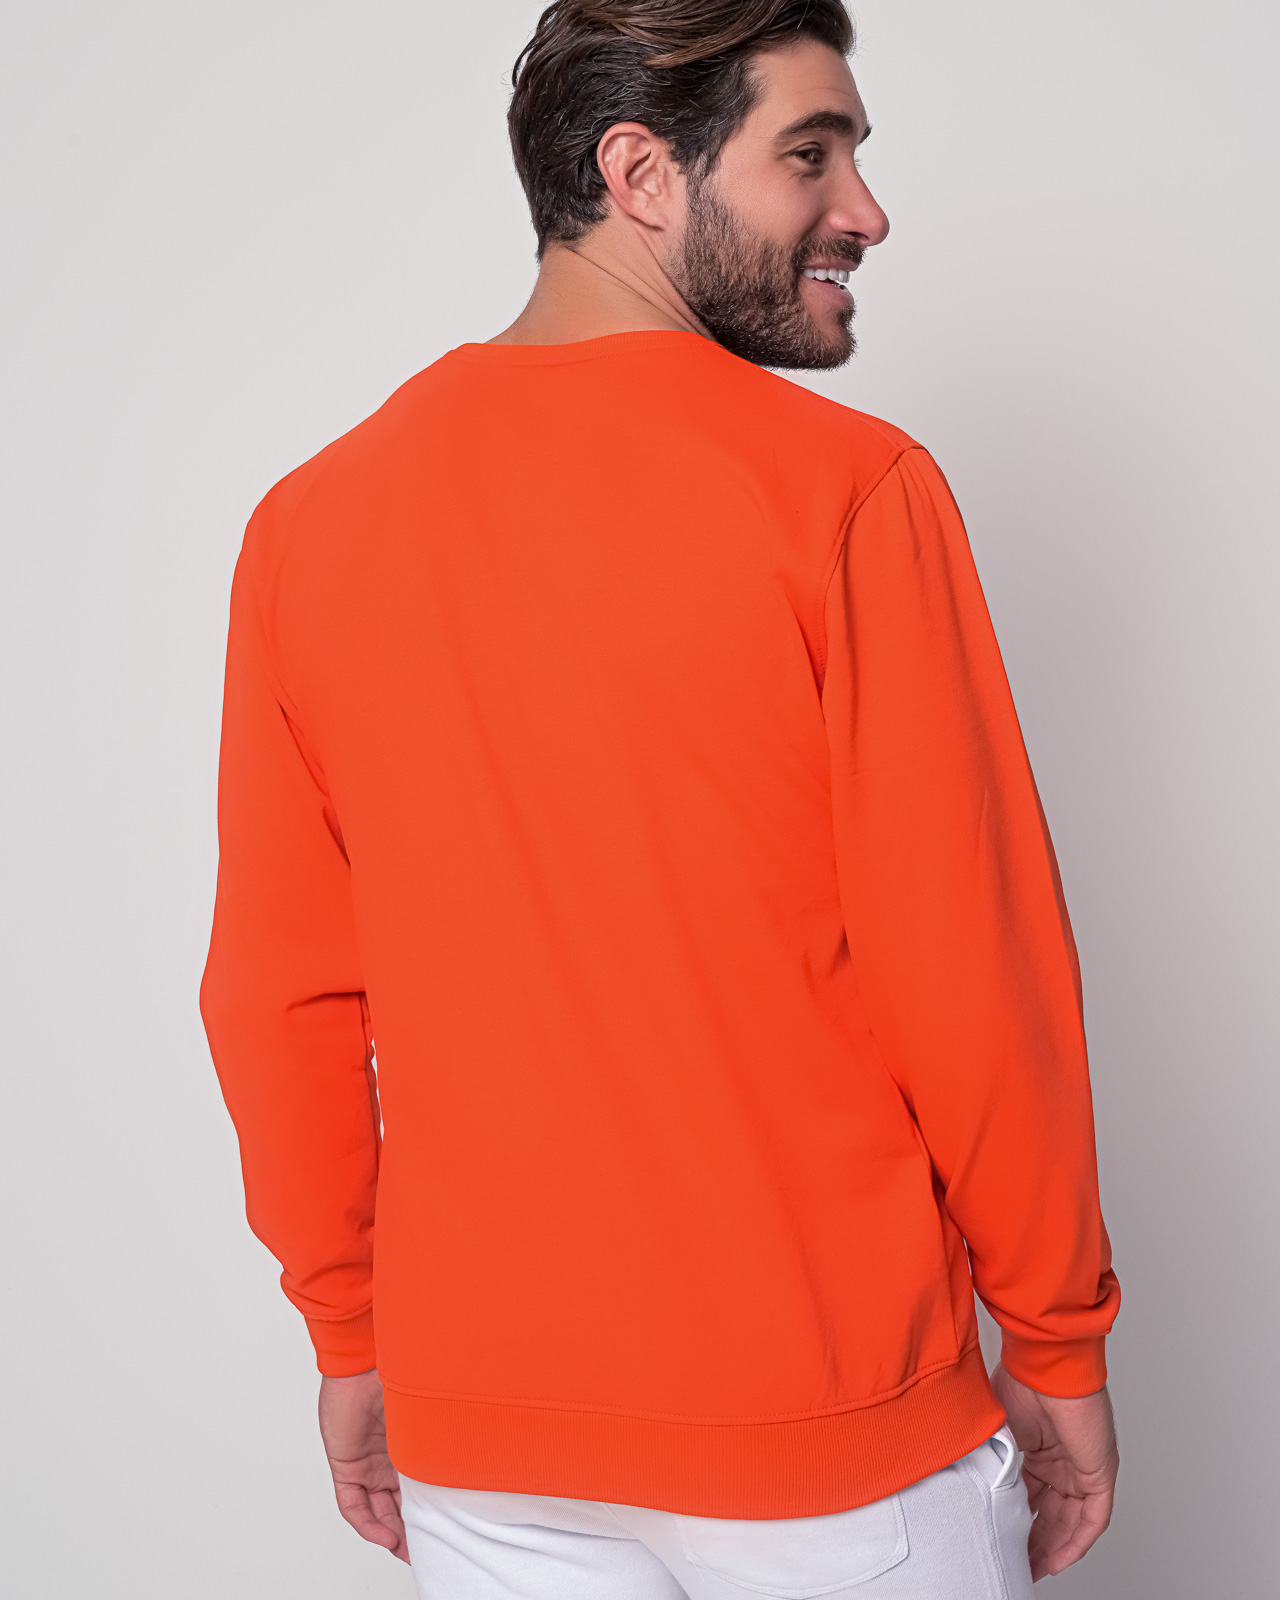 Ανδρικό φούτερ πορτοκαλί μονόχρωμο | Metropolis Fashion City